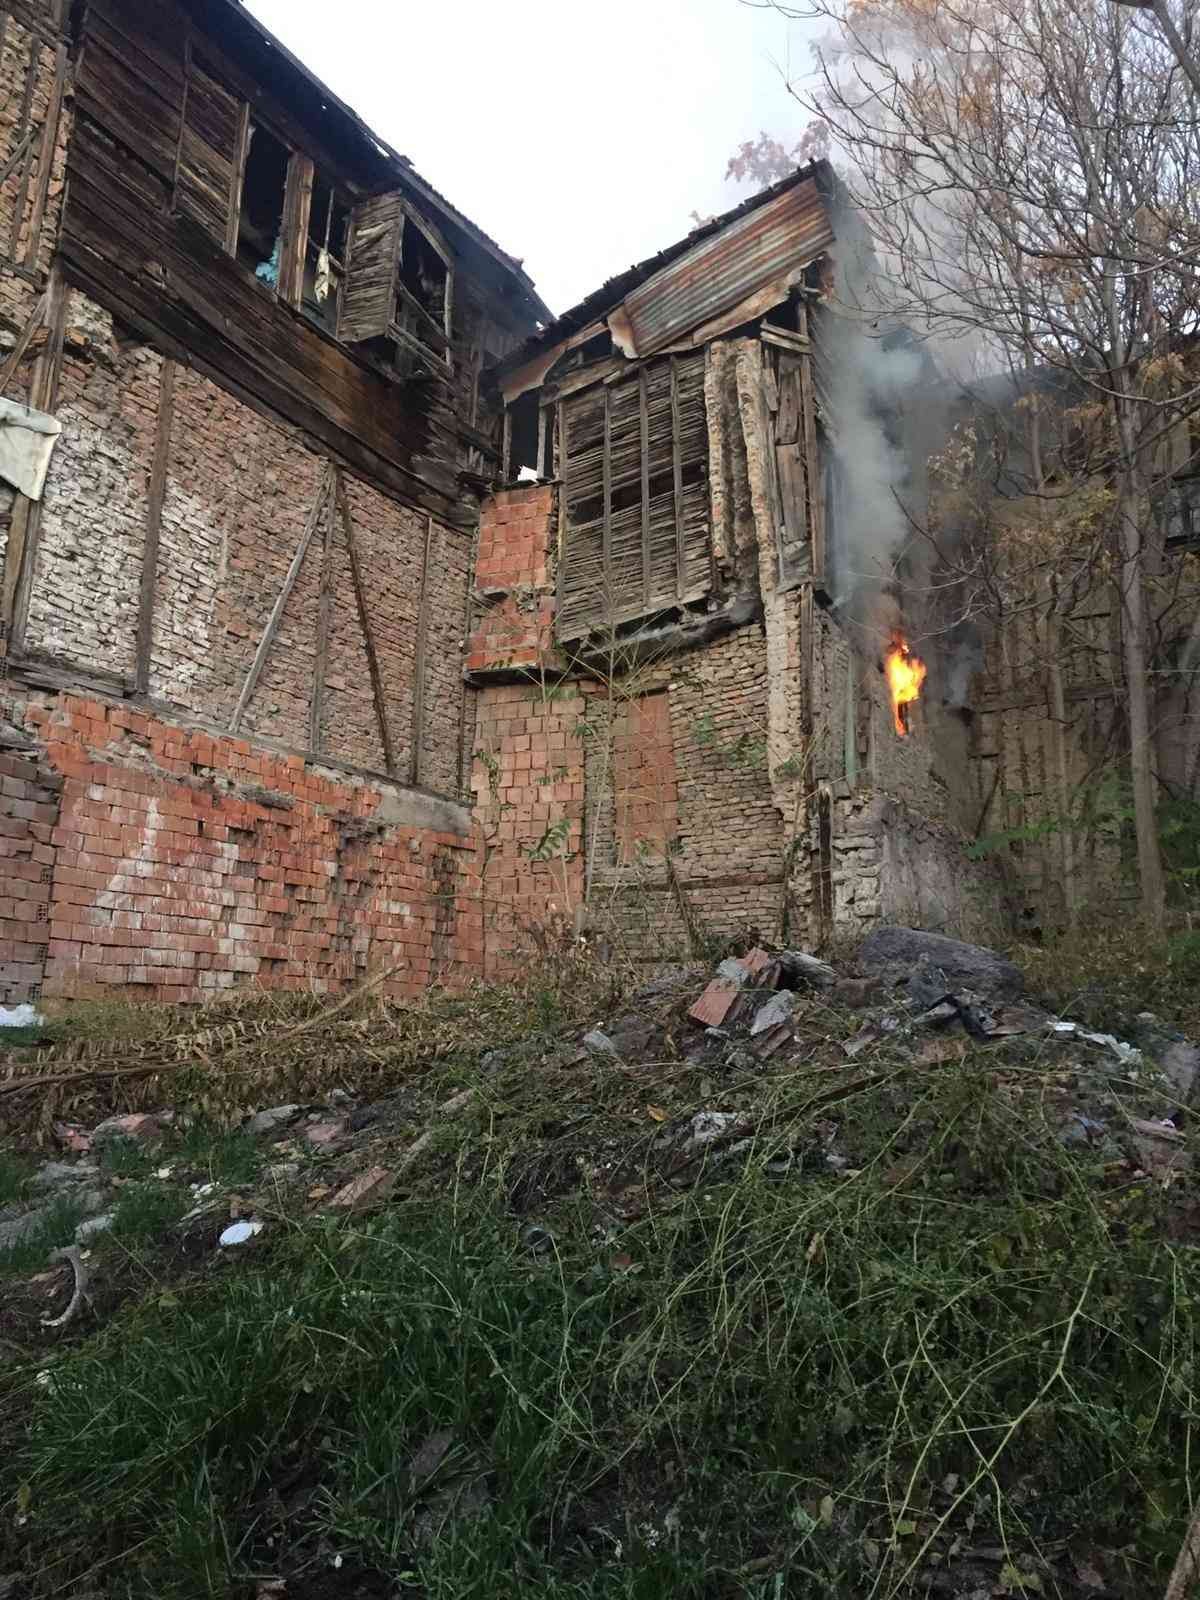 Ankara’da evde yangın çıktı, ev sahibi ile kiracı isyan etti: Evlerimizi sürekli yakıyorlar #ankara